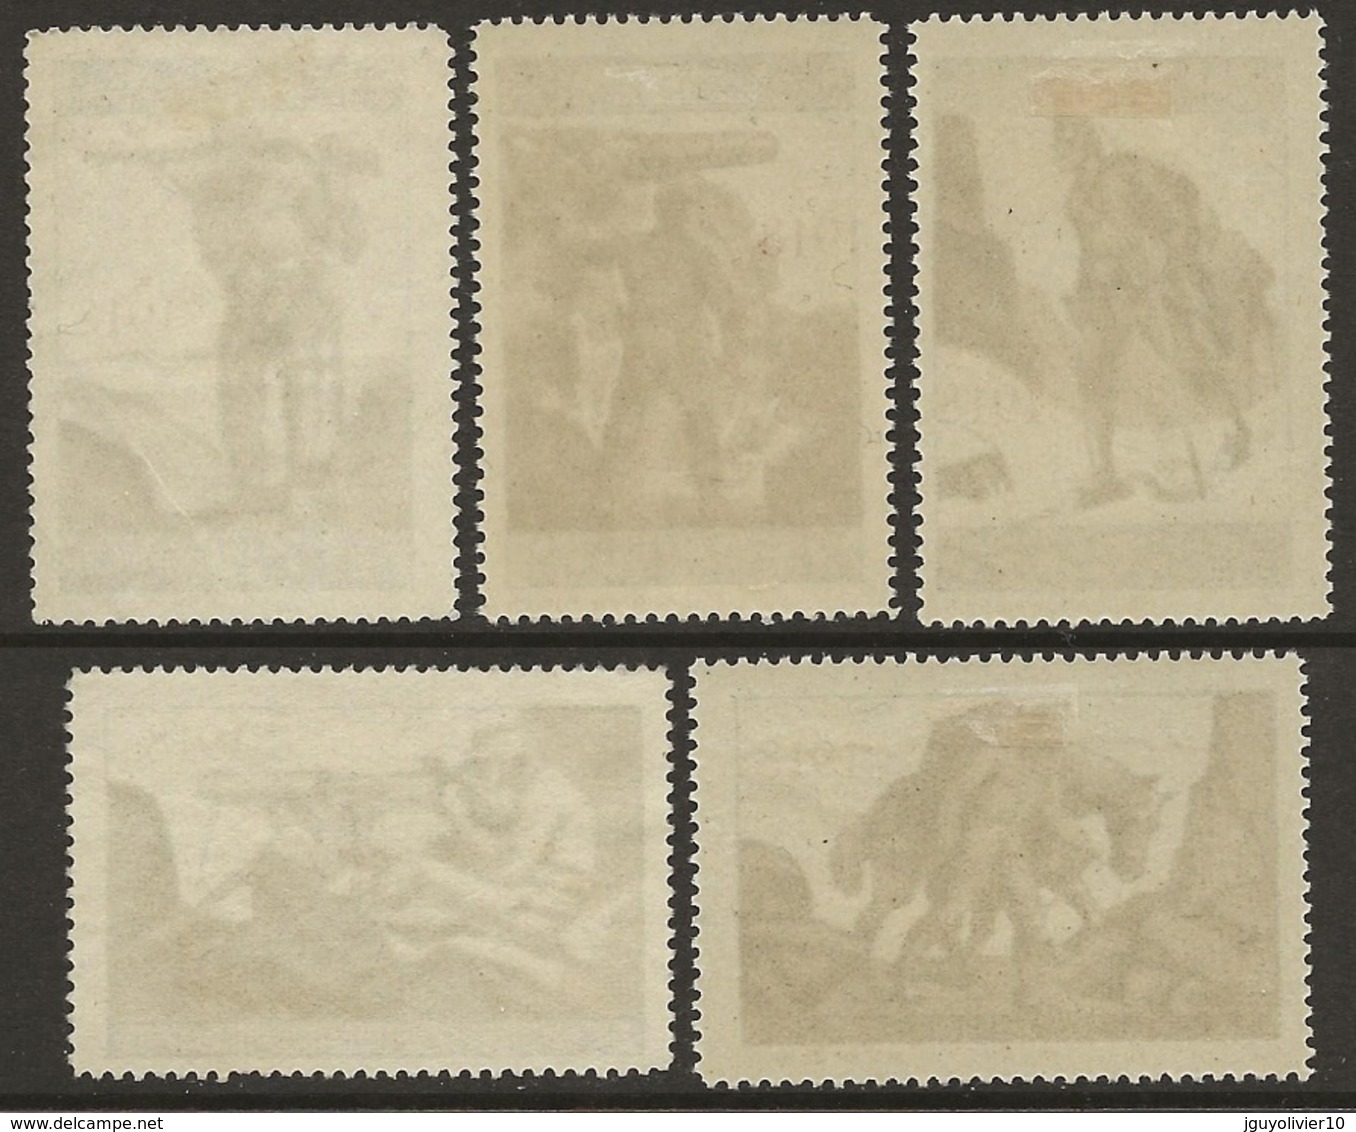 Suisse WWI Vignette Militaire Soldatenmarken FORTRESS TROOPS Set 1914-18 Fine Unused - Vignettes